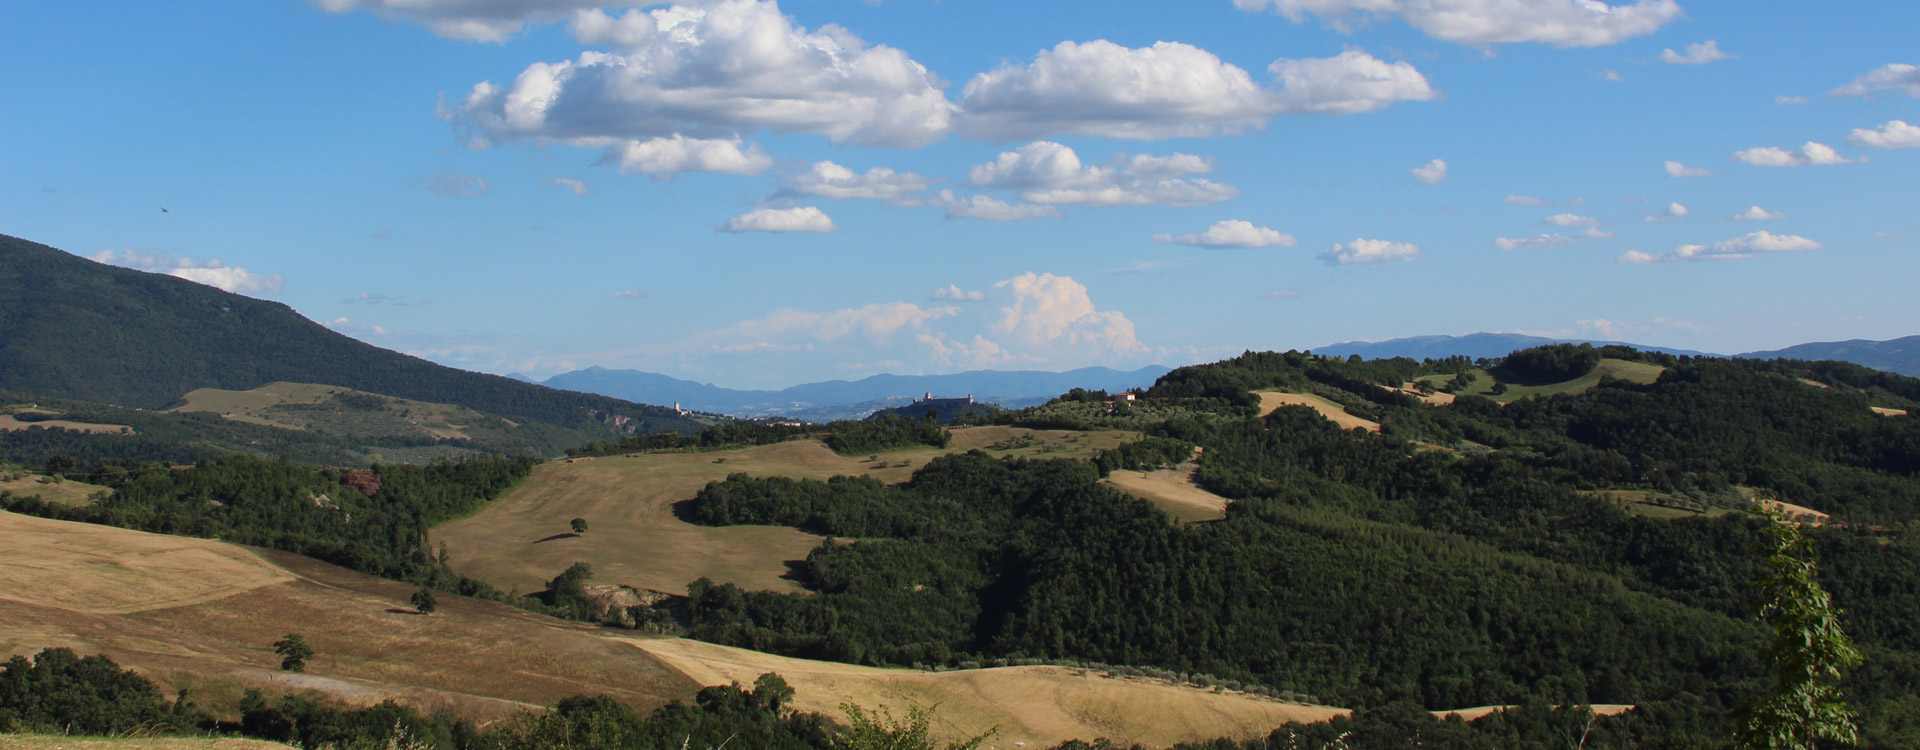 Agriturismo Assisi 'Relais Parco del Subasio' - Ti aspettiamo per dare valore e sapore al tempo ed al silen<io